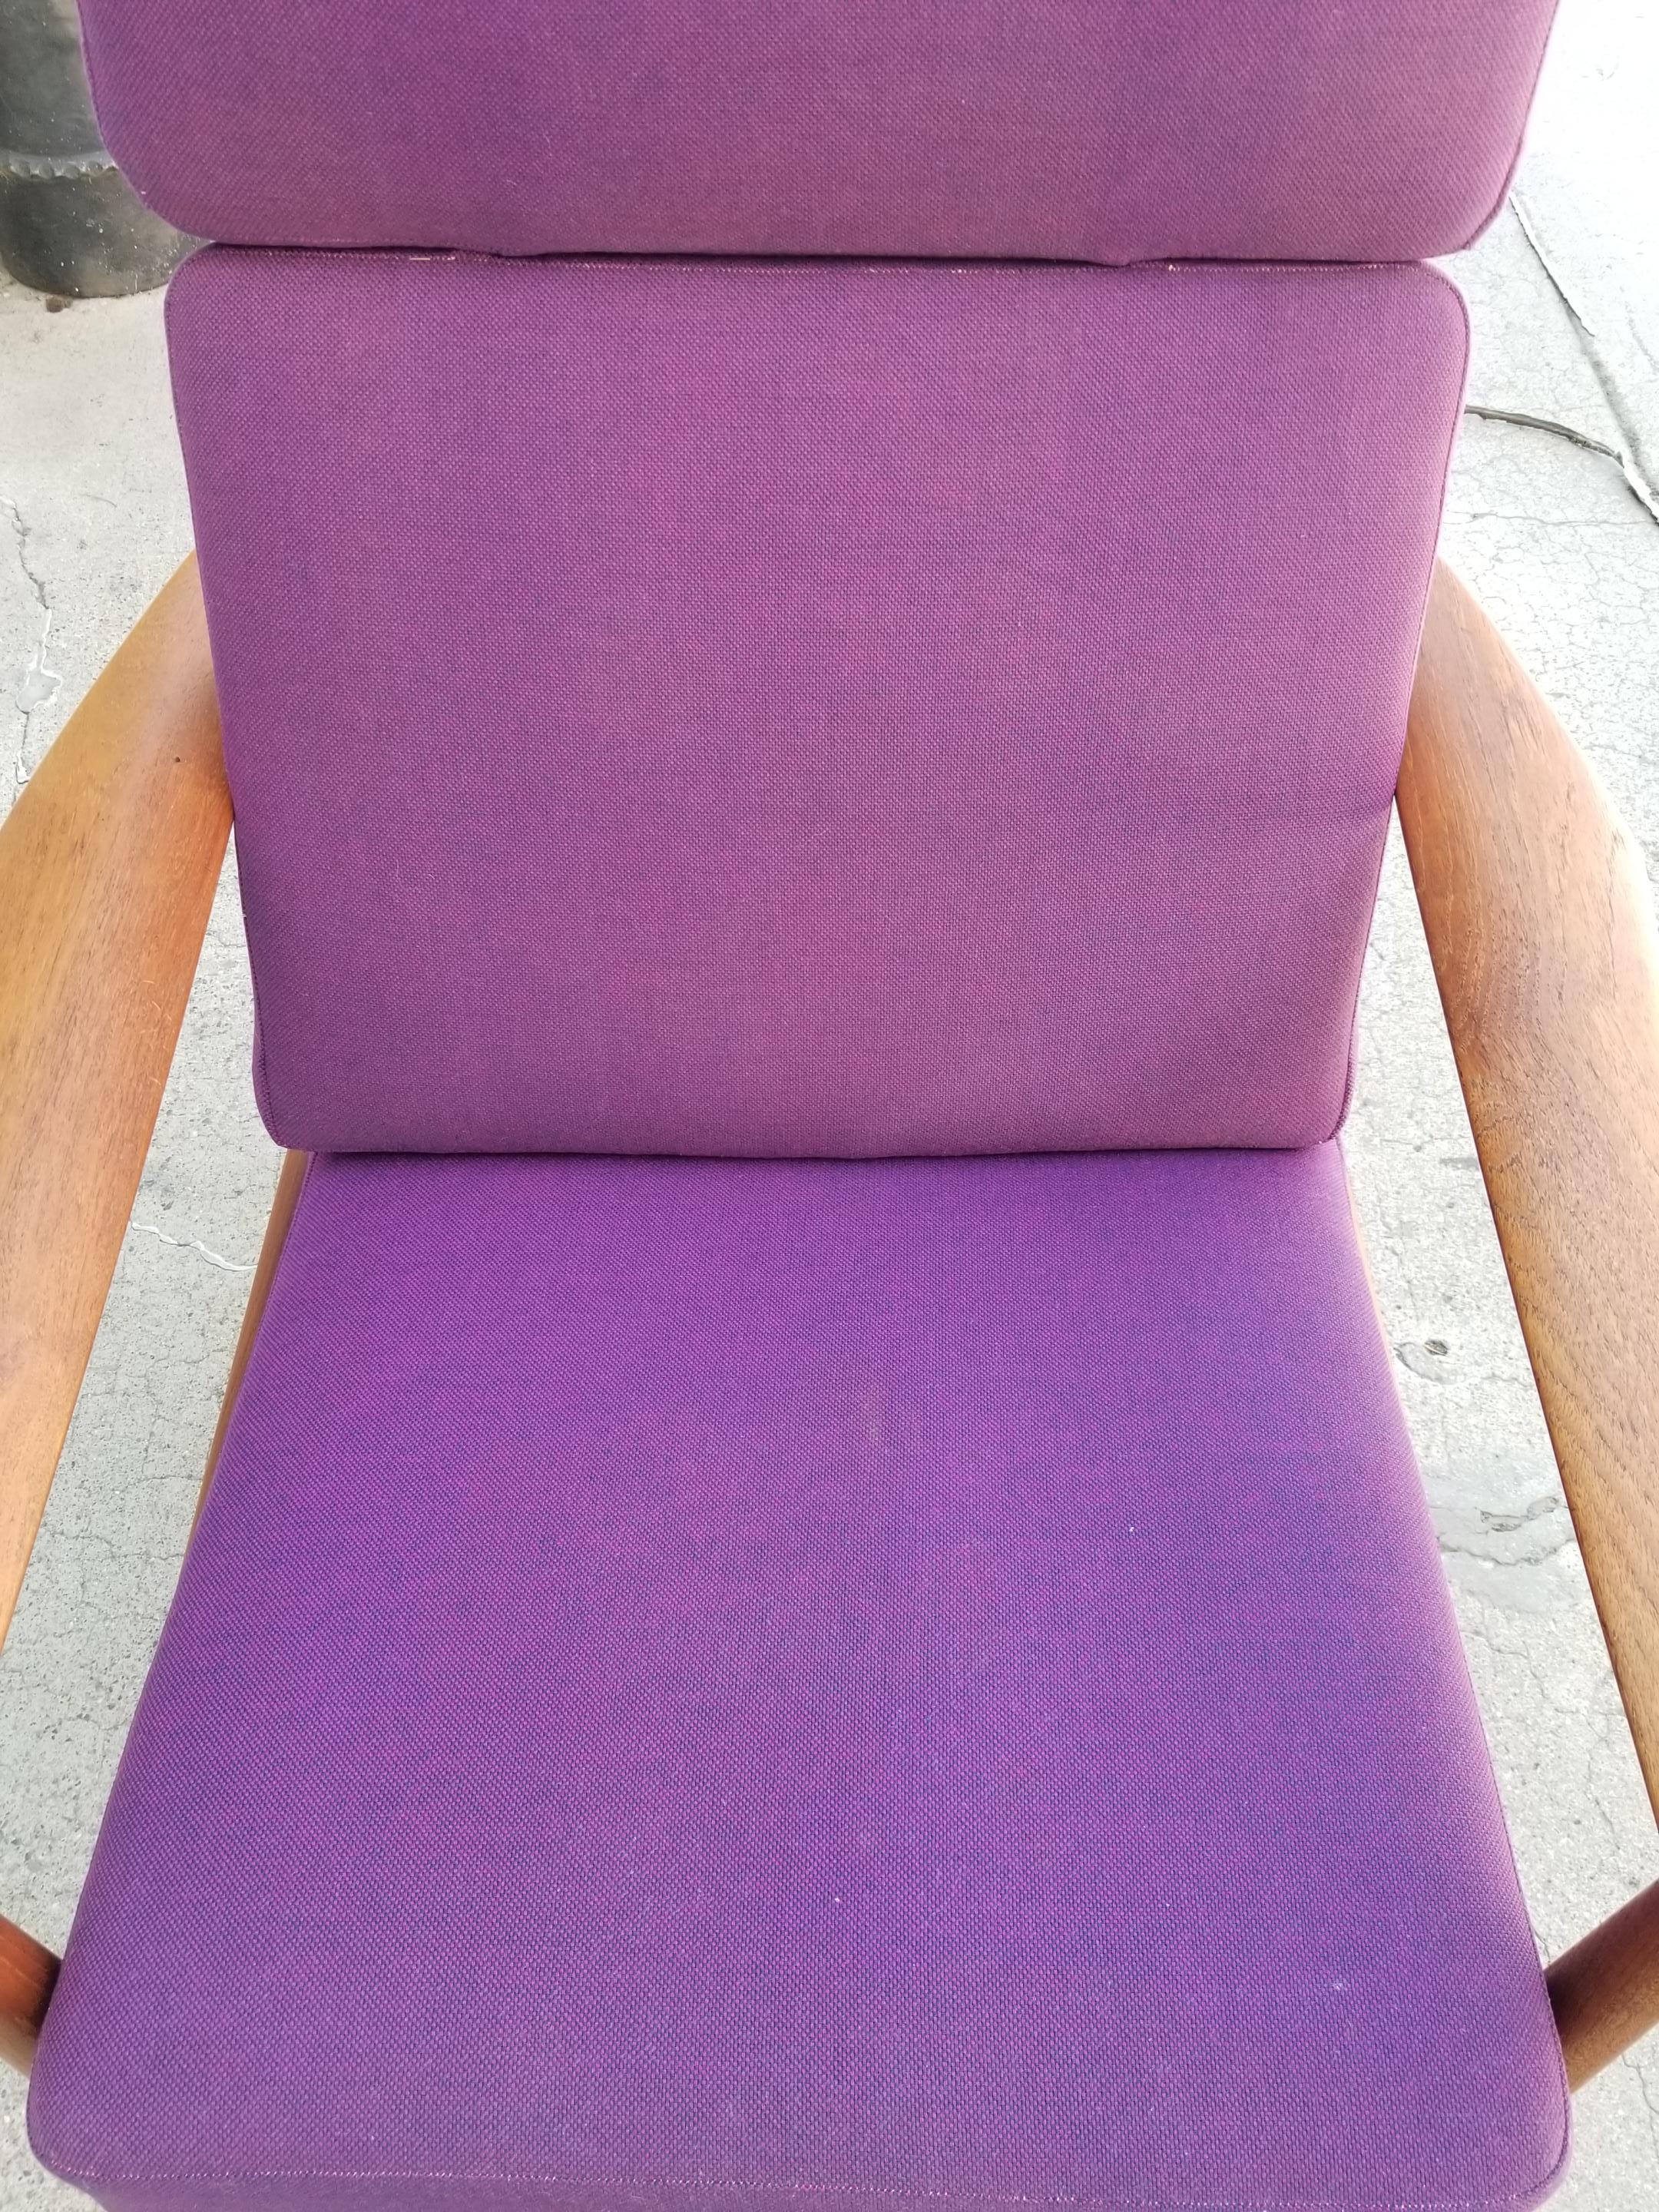 Arne Vodder FD 164 Teak Adjustable Lounge Chair 2